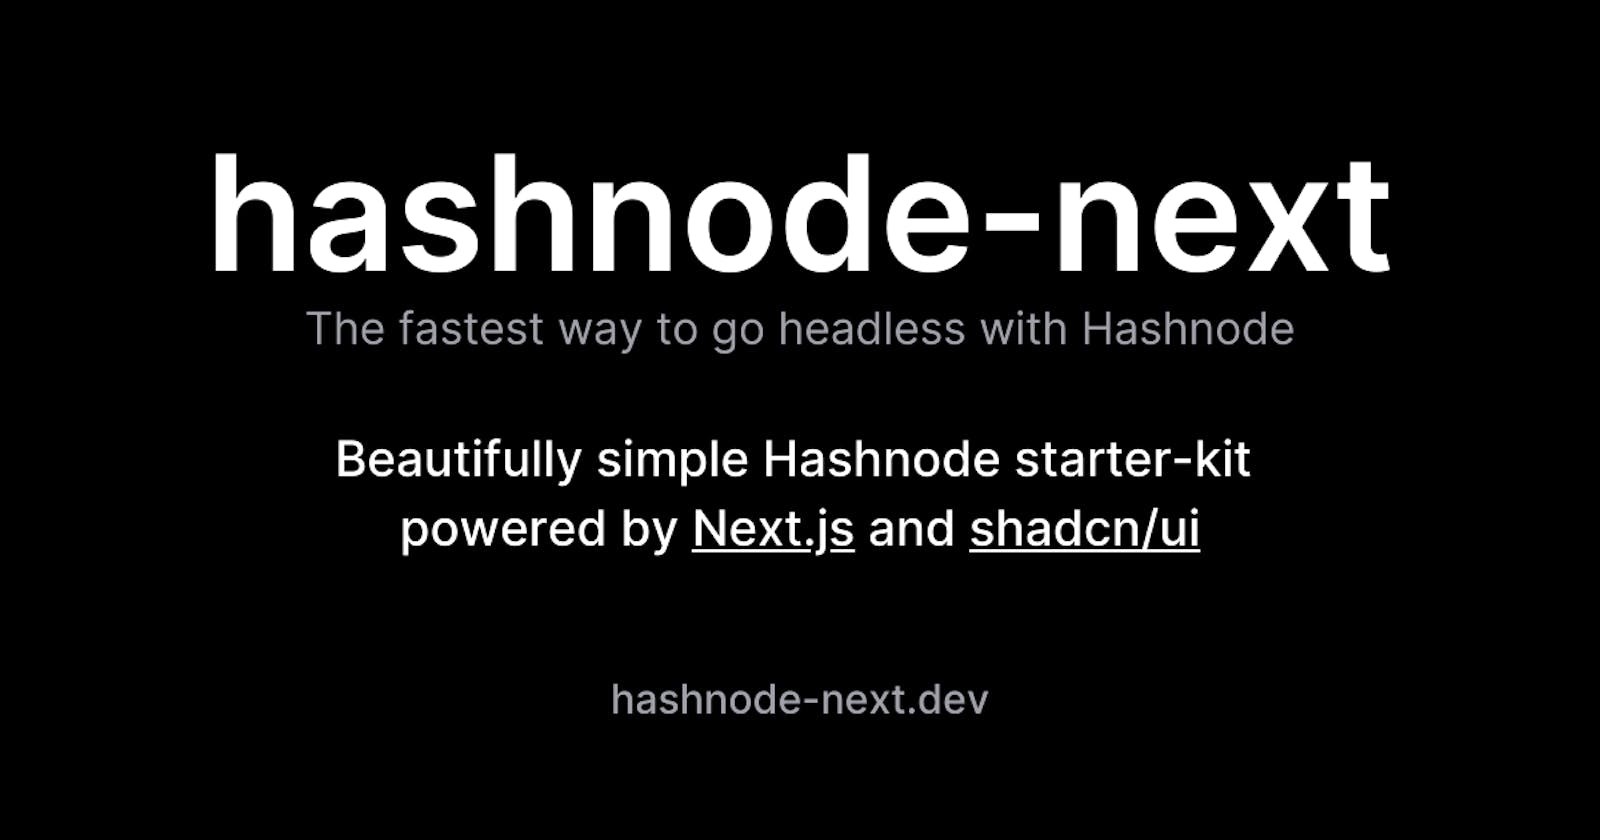 Introducing Hashnode Next